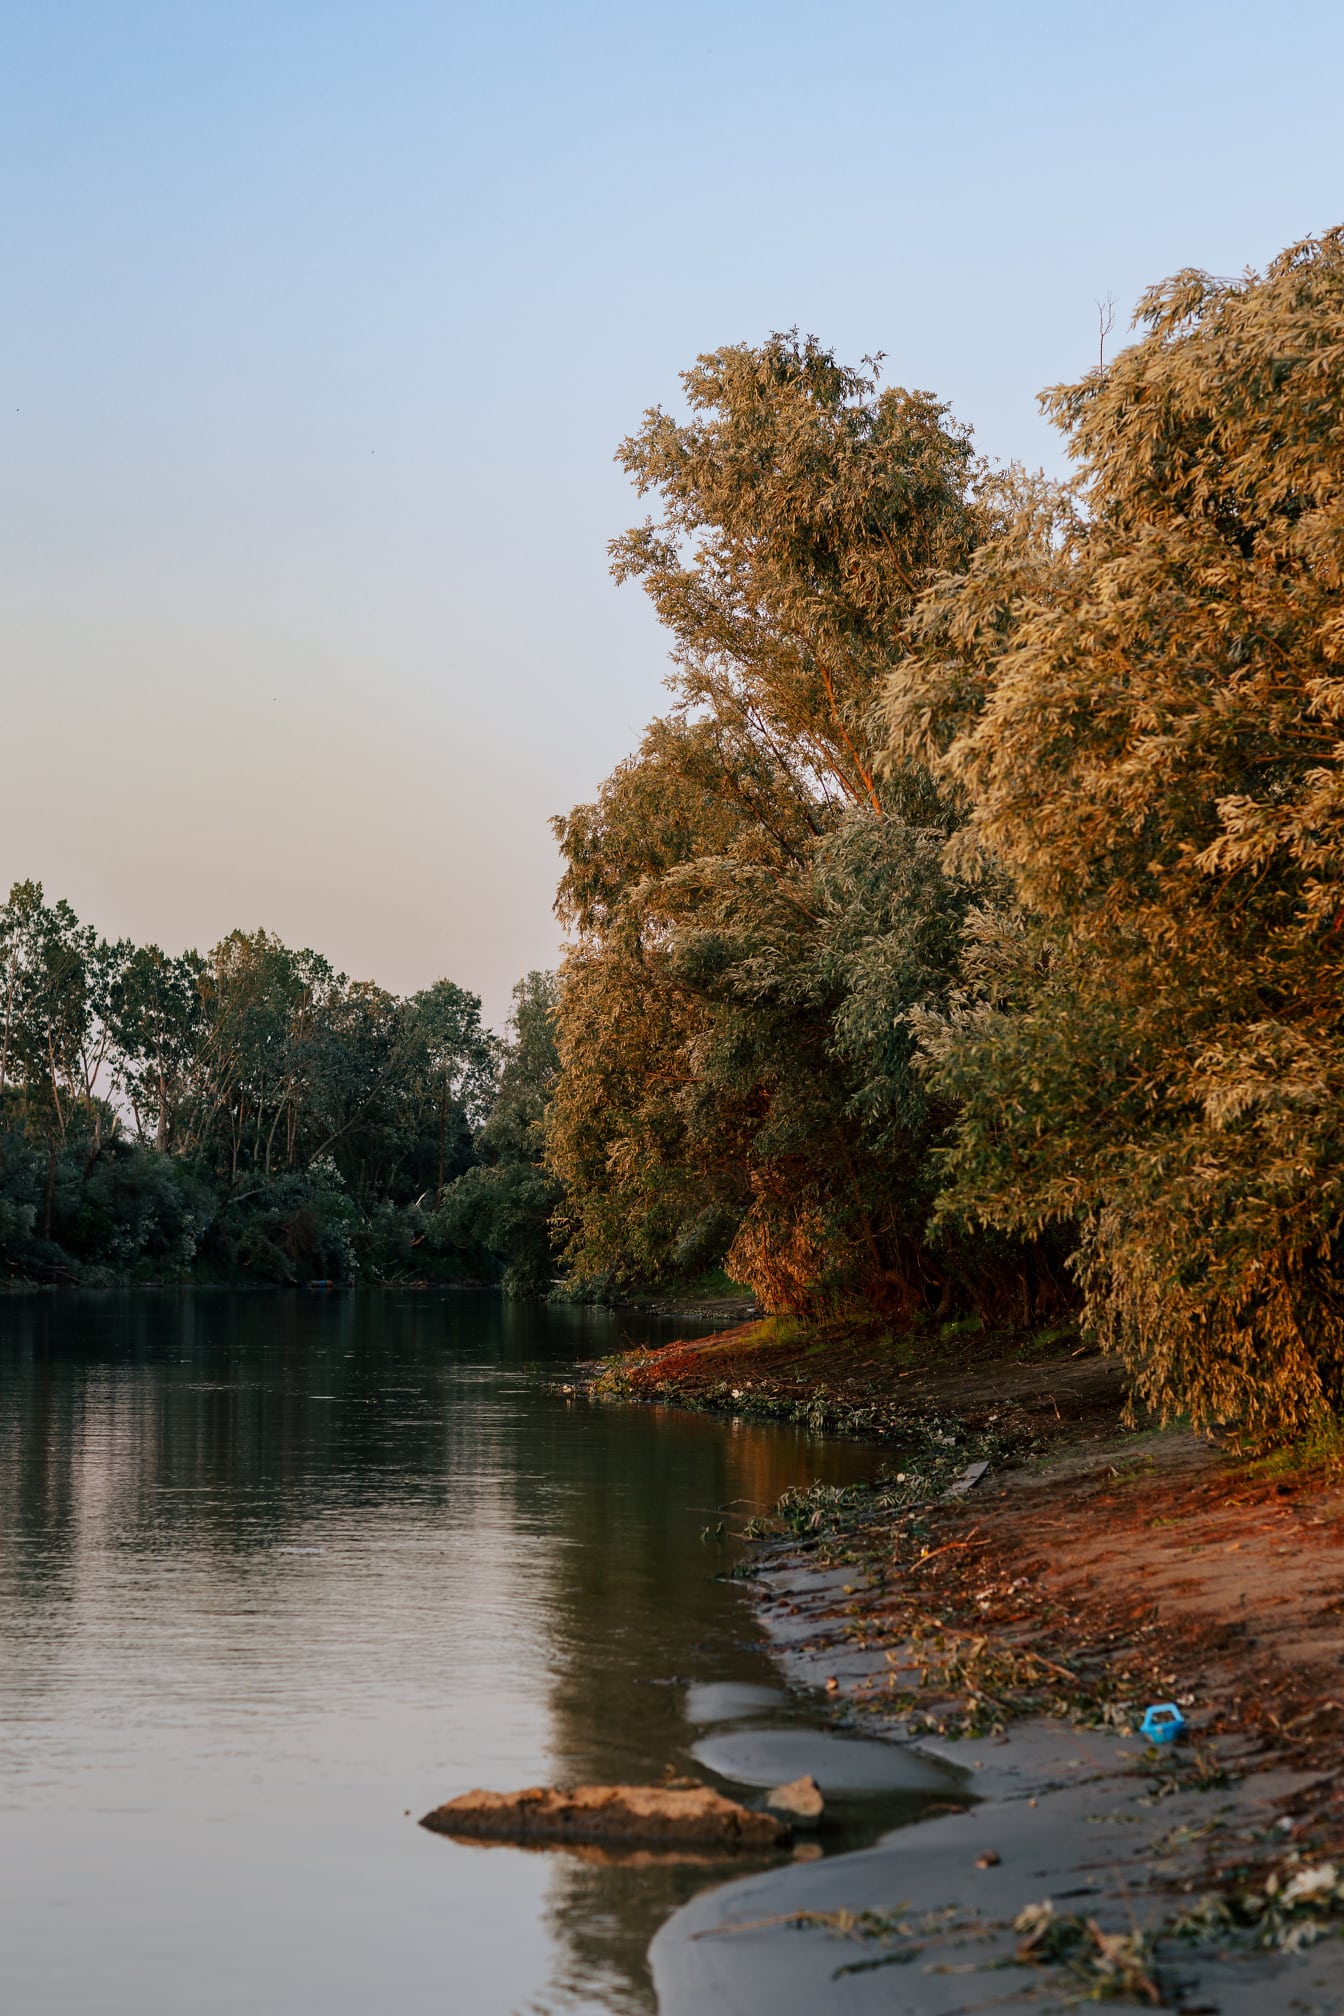 De oever van de rivier van Donau met takken en bladeren in de herfstseizoen